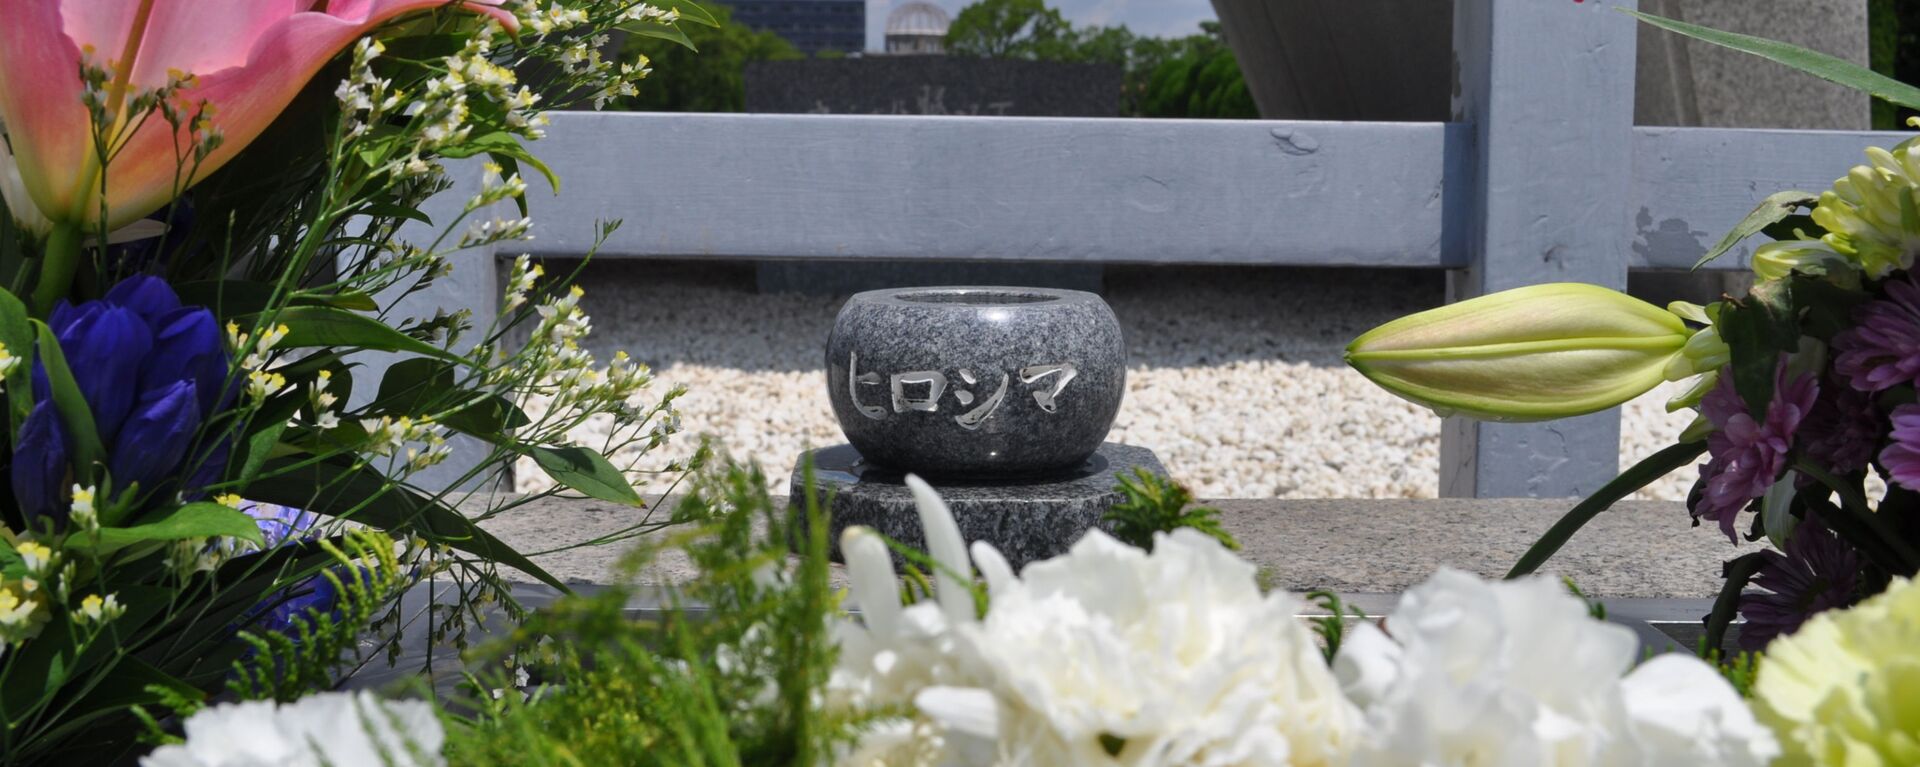 広島平和記念公園（2020年7月30日） - Sputnik 日本, 1920, 06.08.2020